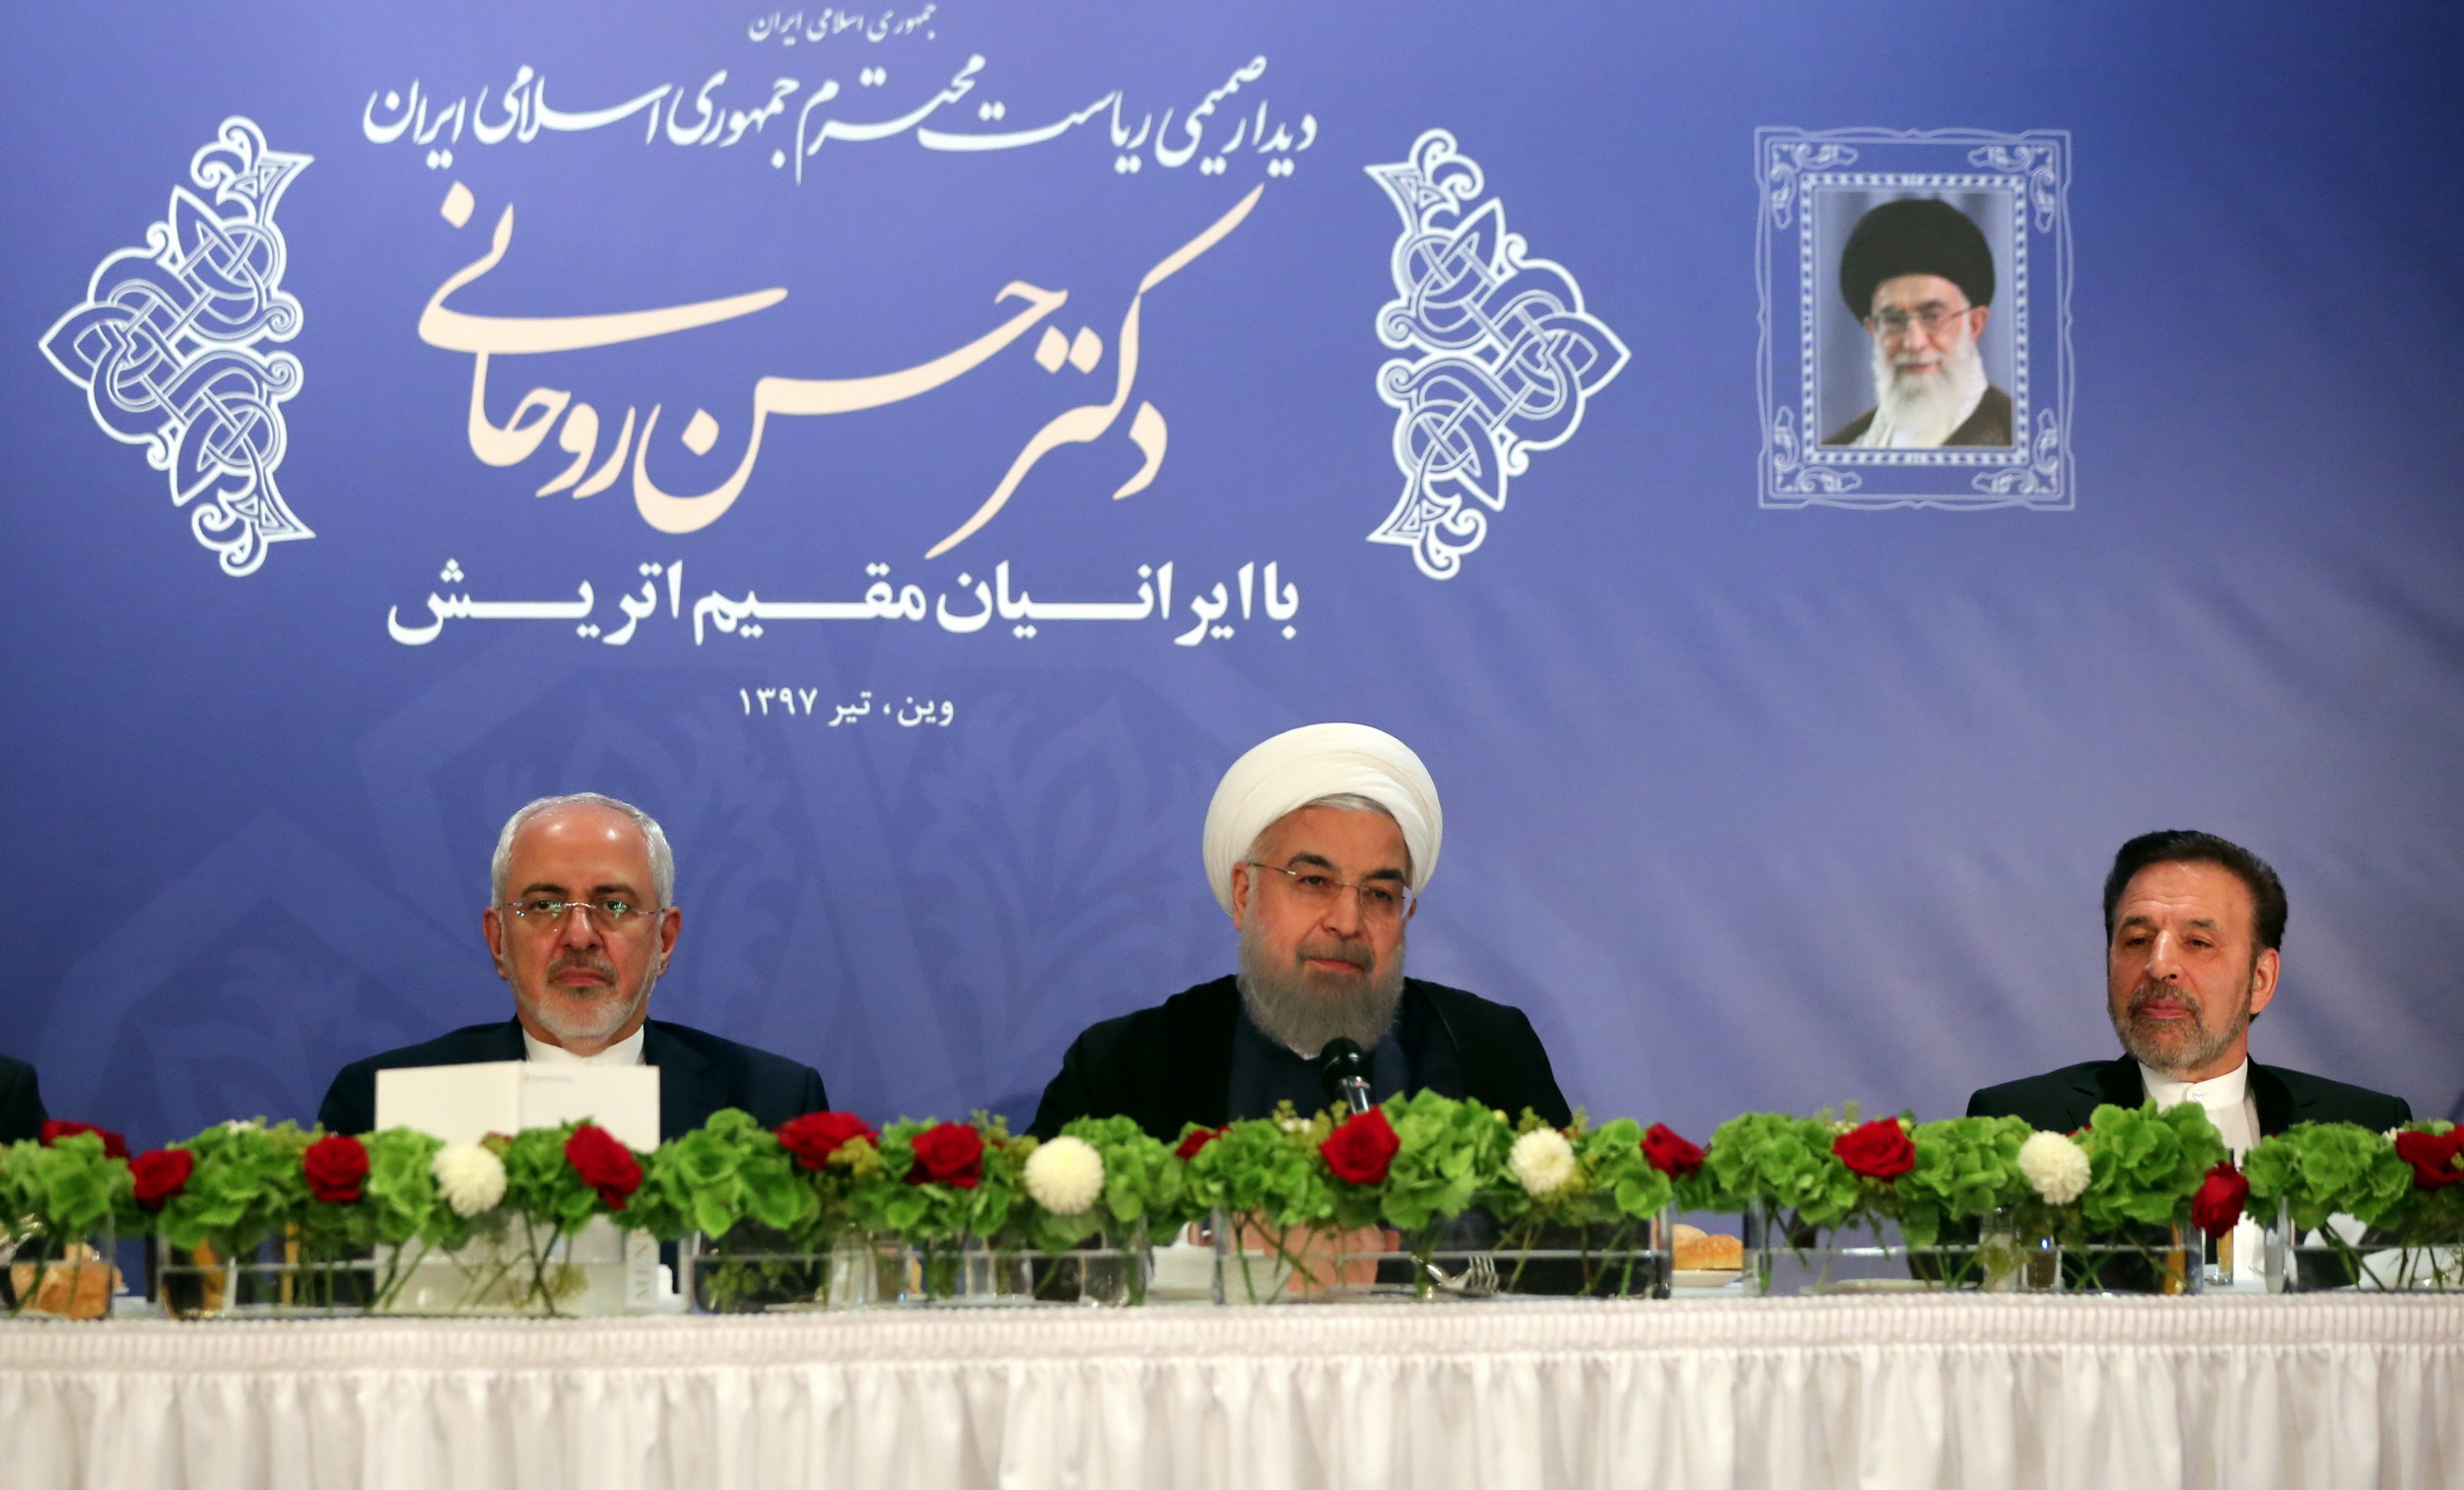 کسی نمی تواند عشق ایران را از قلب ایرانیان جدا کند/هدف دولت آمریکا انزوای ملت ایران بود، اما هزینه سنگینی پرداخت خواهد کرد